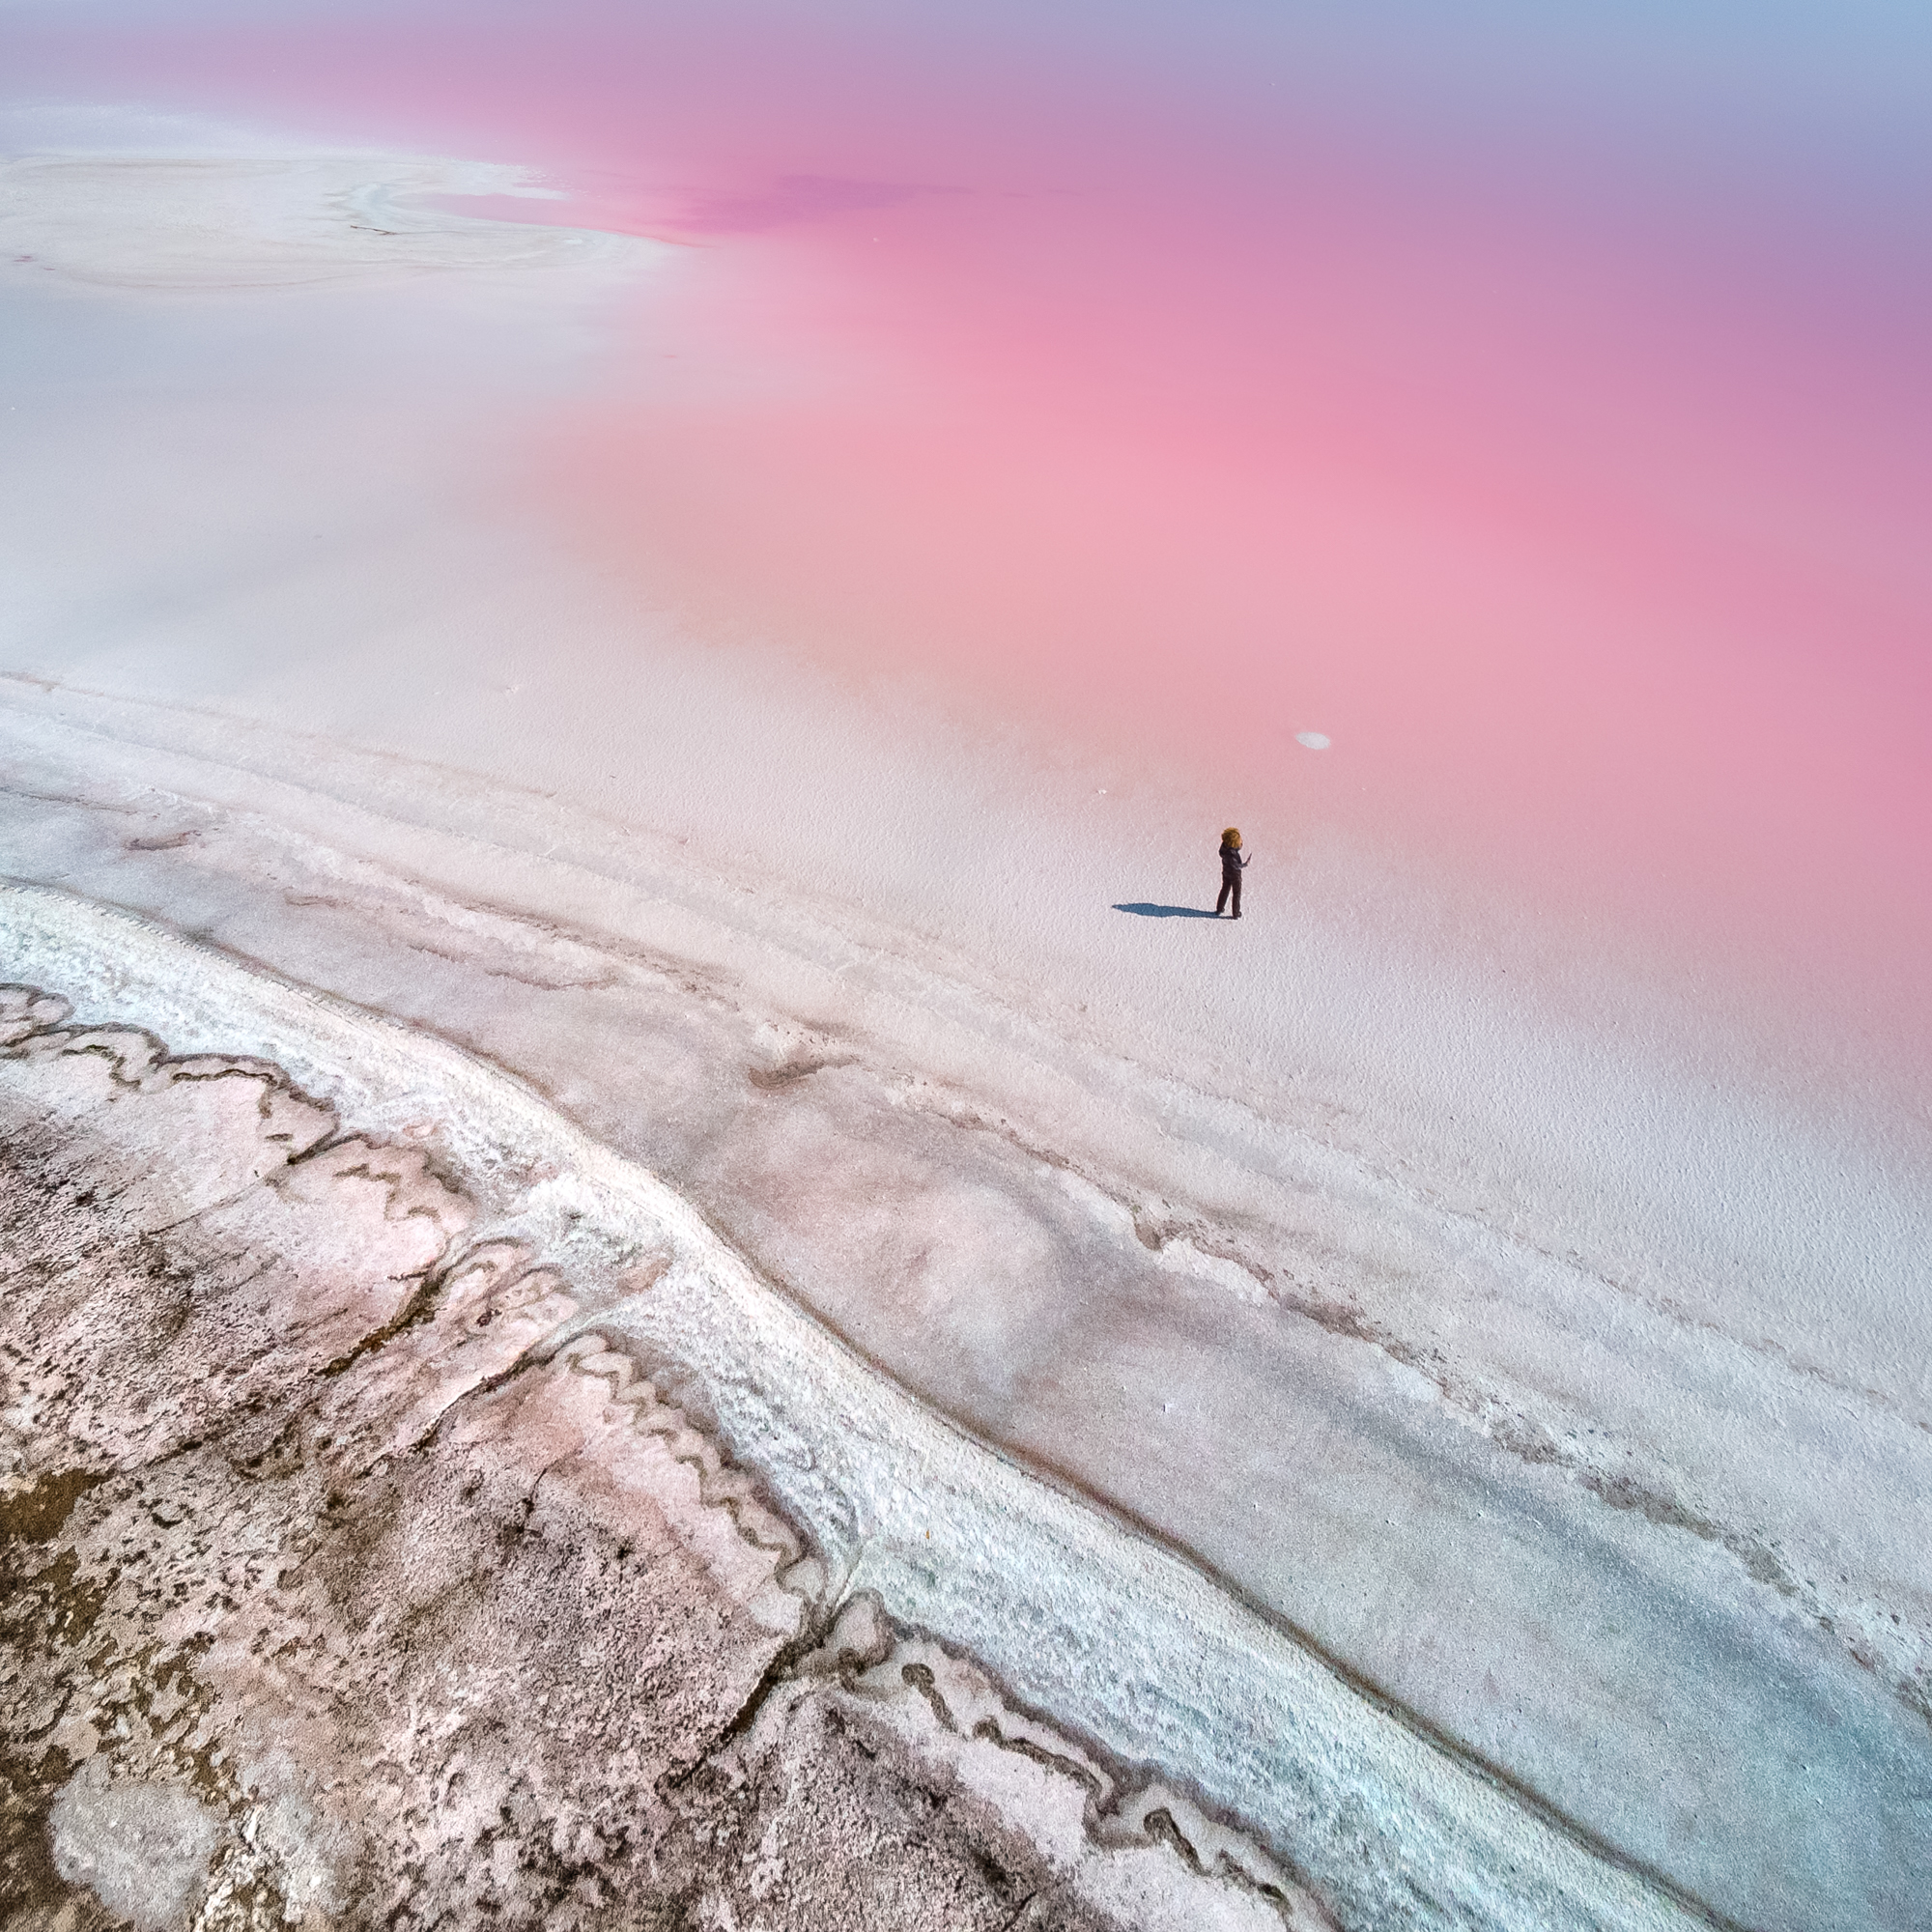 At the Pink Planet by Yevhen Samuchenko